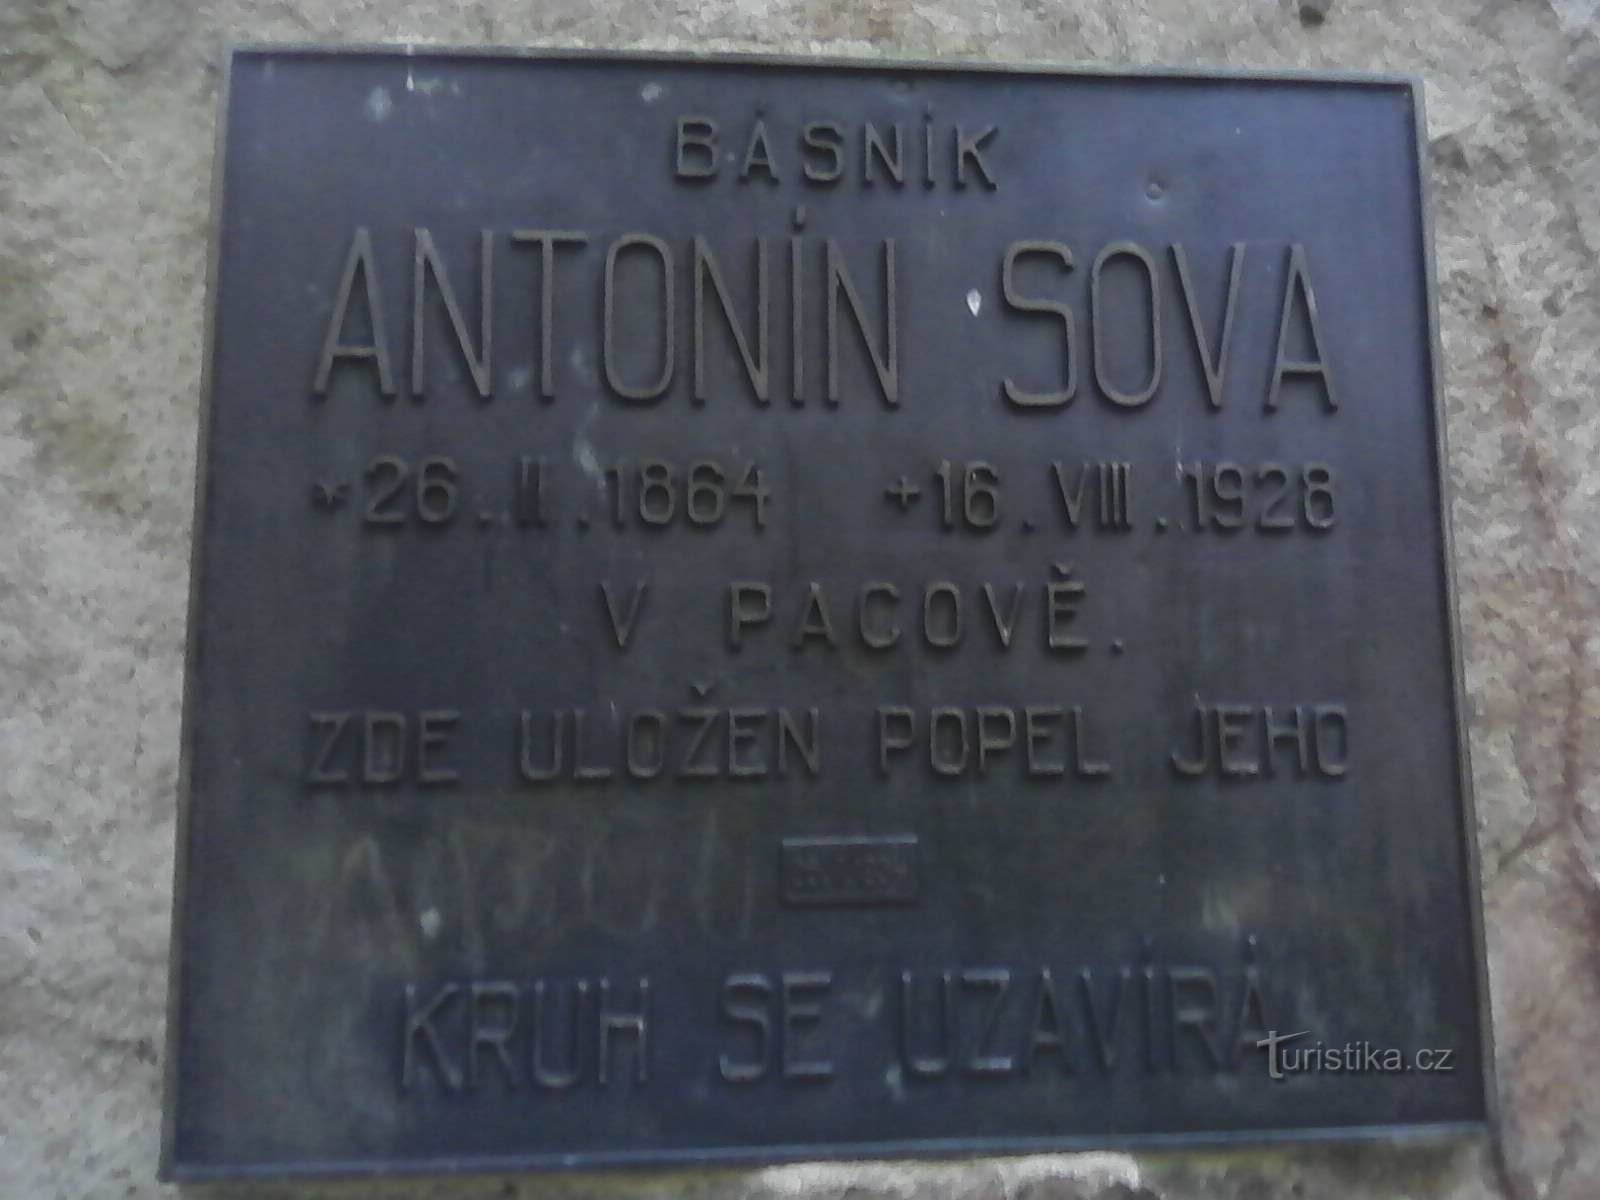 2. Placa comemorativa do monumento ao poeta de 1934.